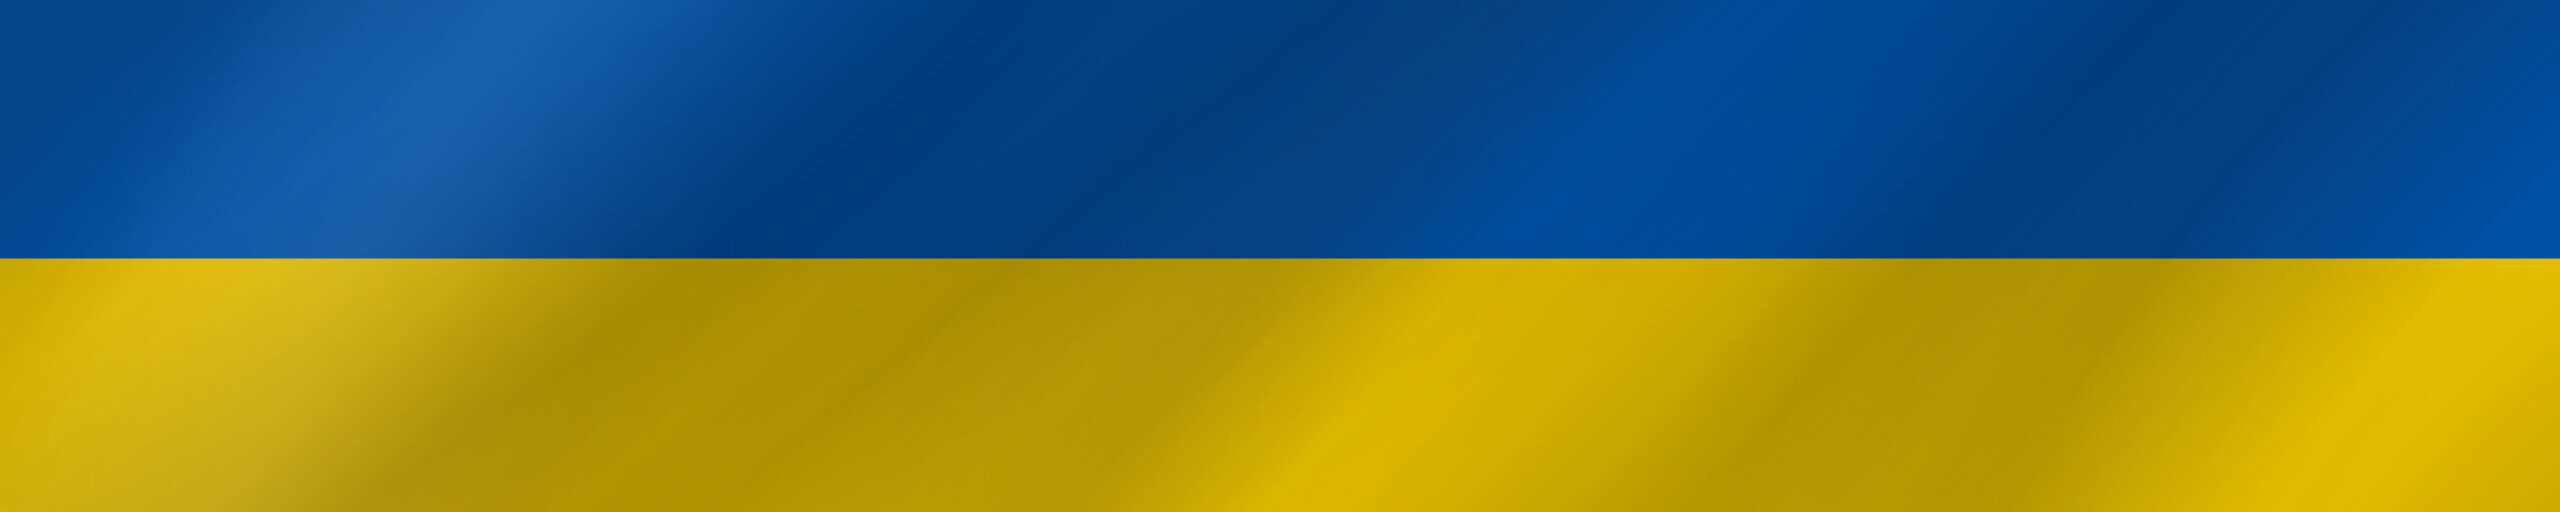 Peněžní převody na Ukrajinu